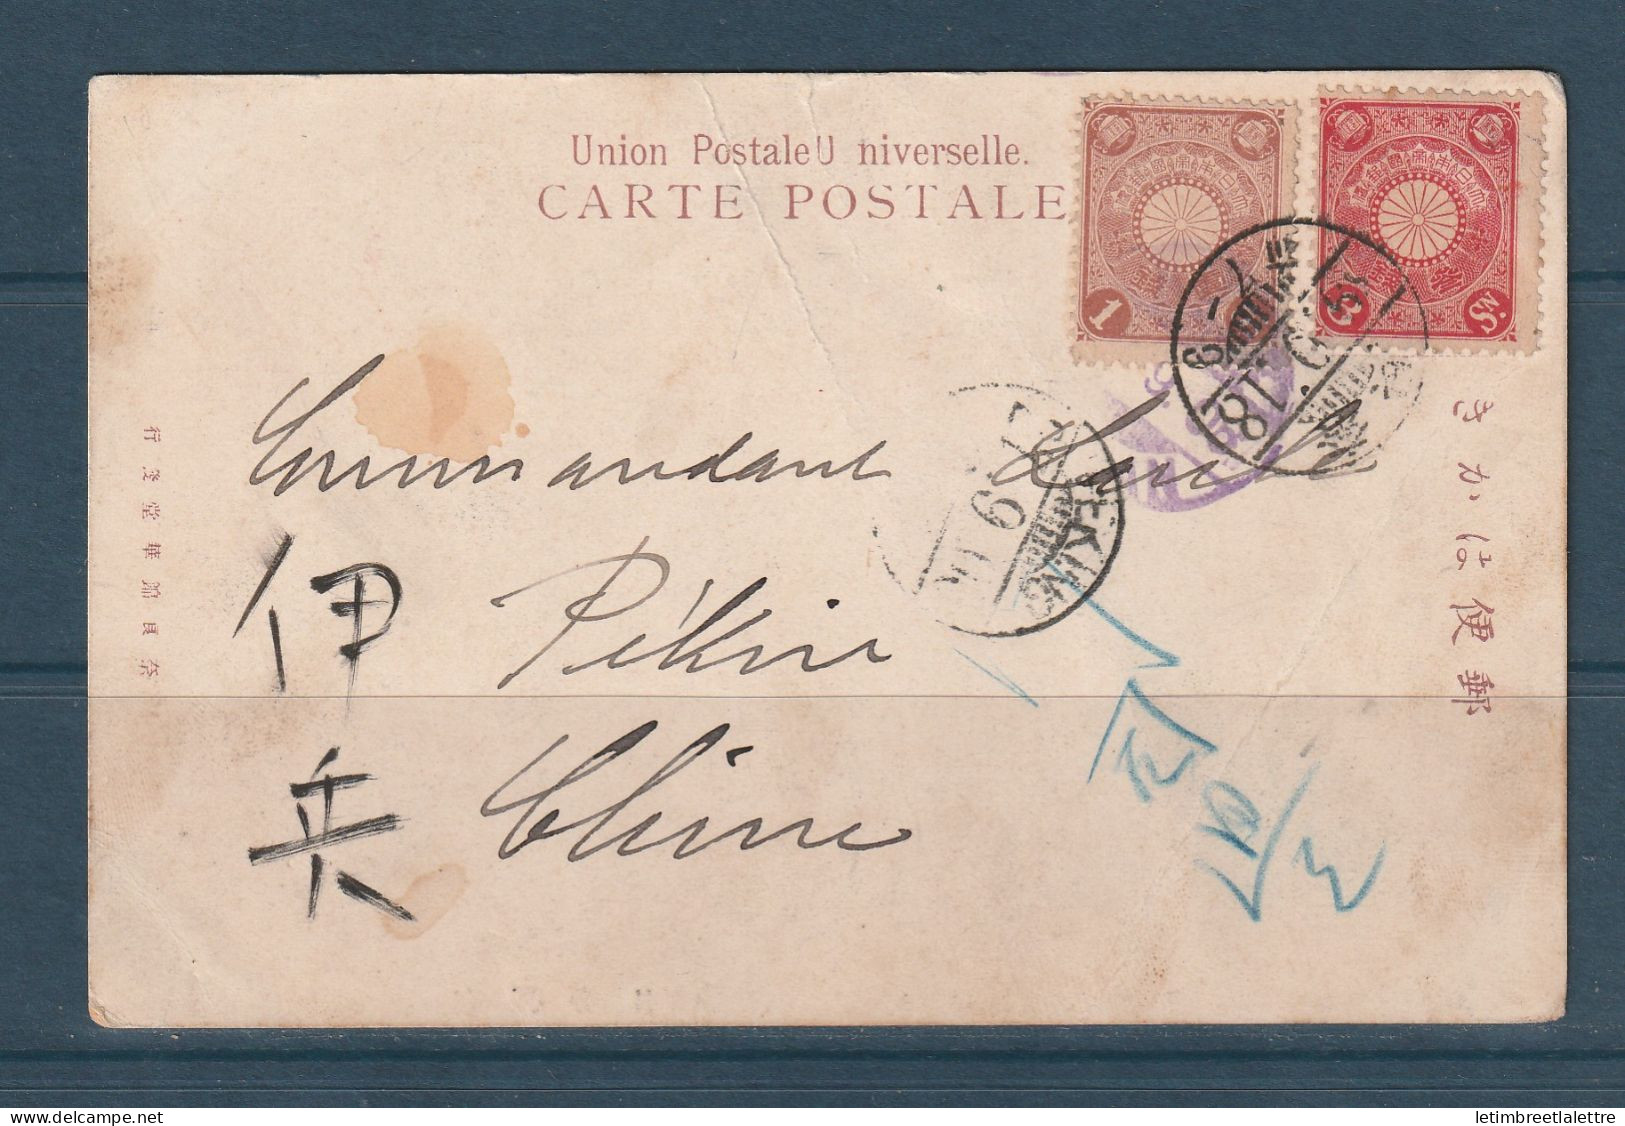 Japon - Carte Postale Pour La Chine - Postée De Nara Pour Pékin En 1906 - Briefe U. Dokumente